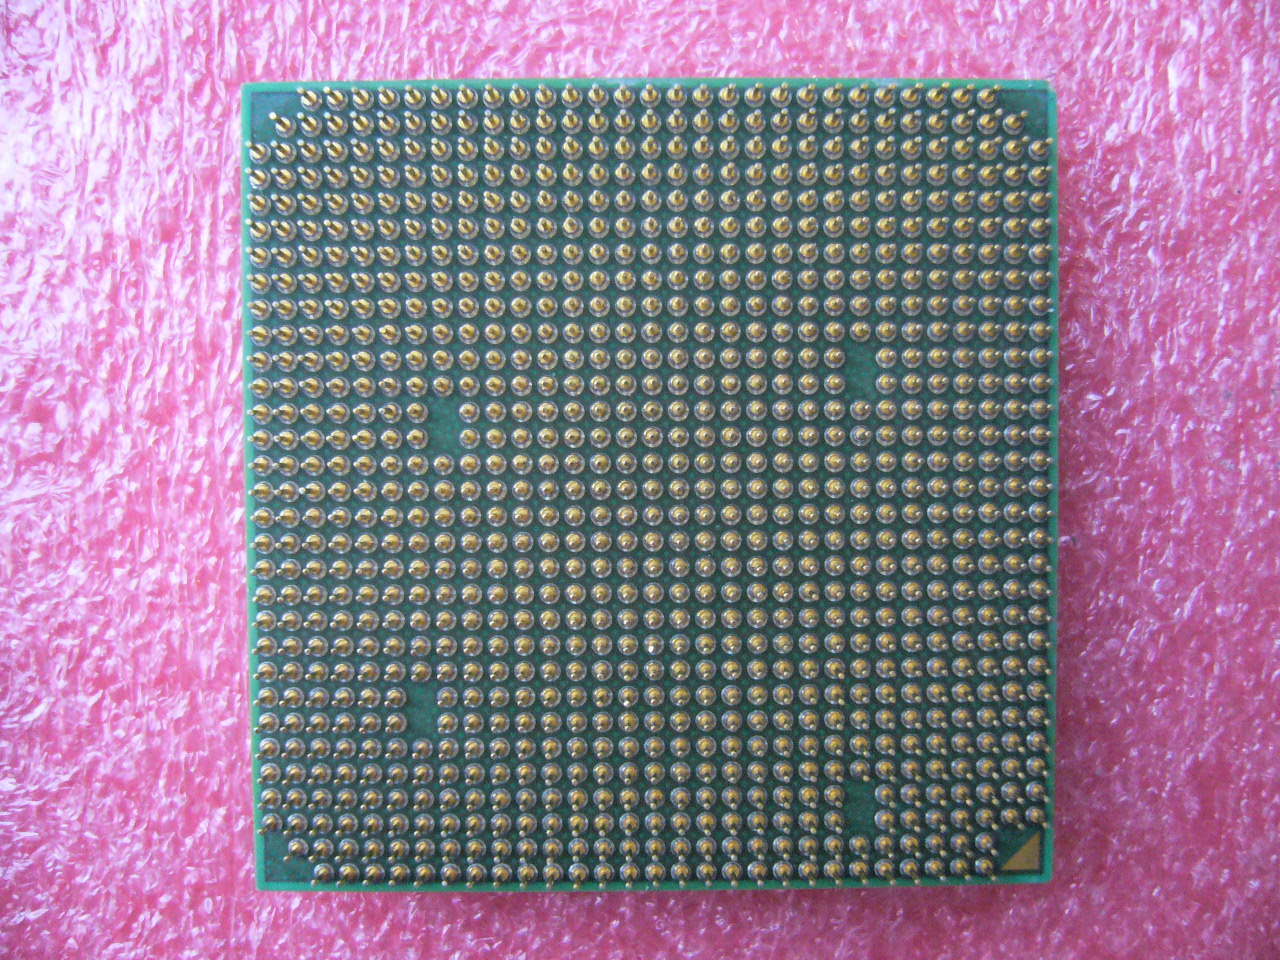 QTY 1x AMD Athlon 64 X2 6000+ 3 GHz Dual-Core (ADX6000IAA6CZ) CPU Socket AM2 - zum Schließen ins Bild klicken